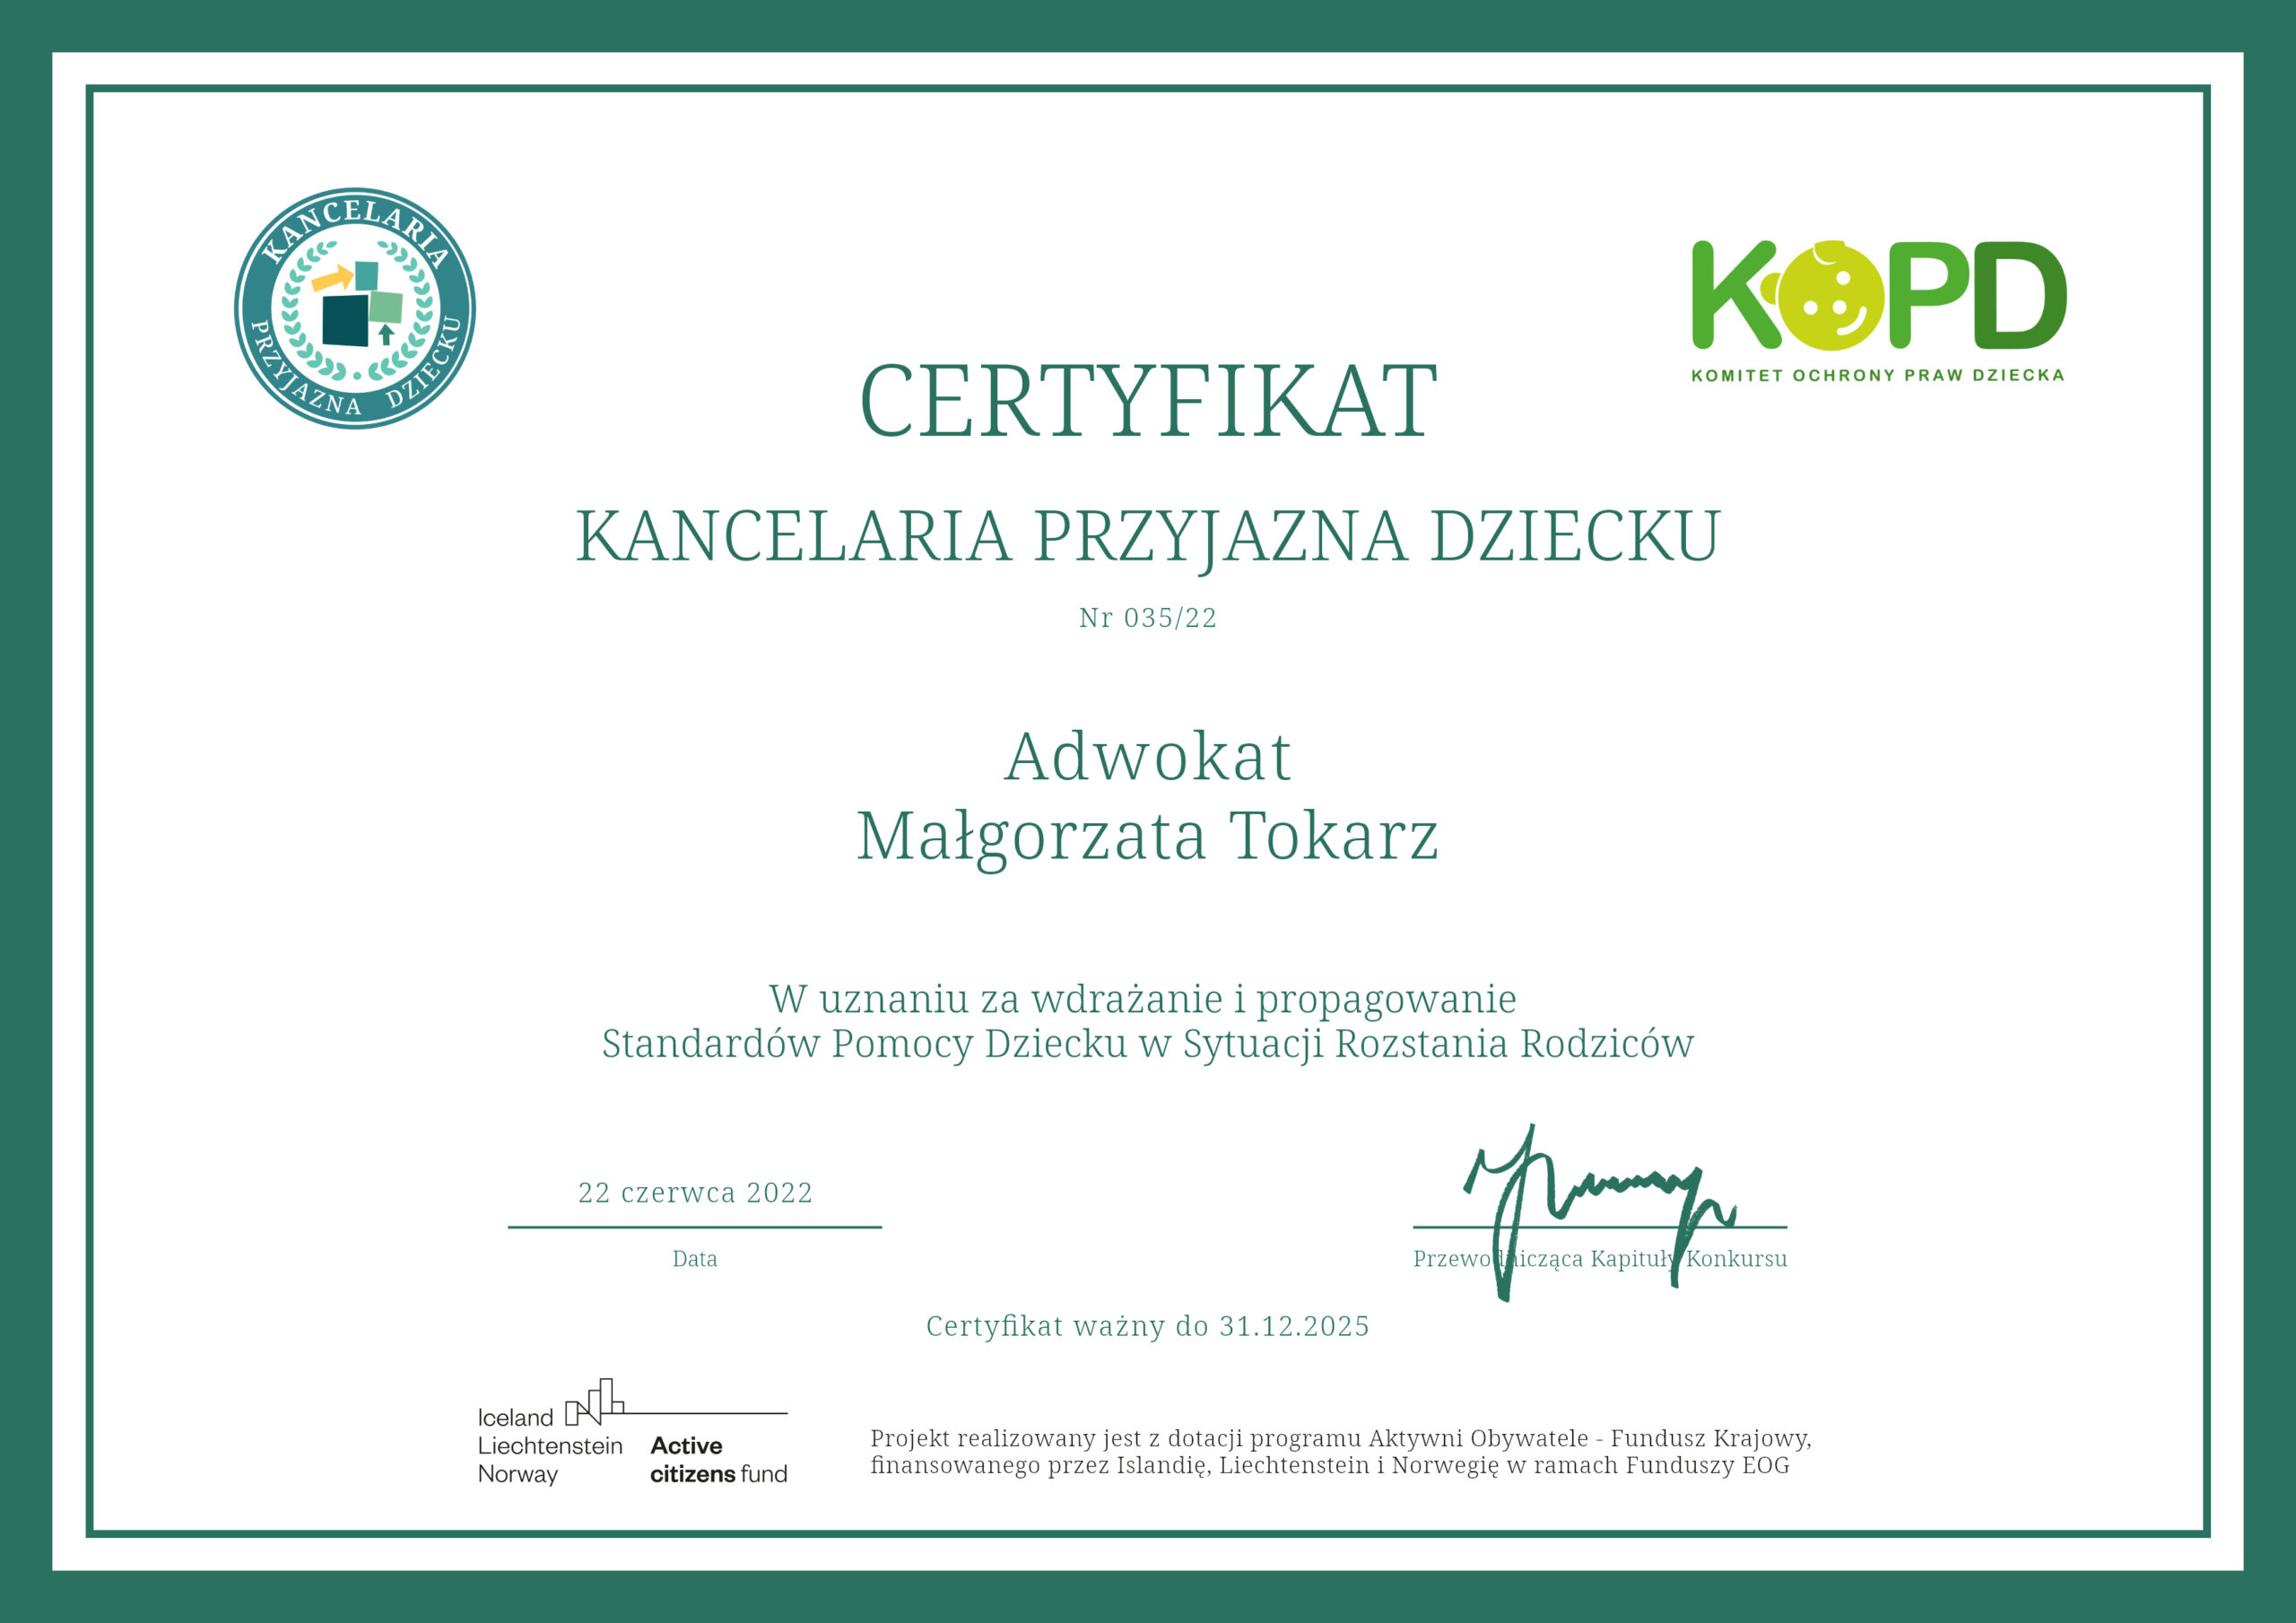 Certyfikat „Kancelaria Przyjazna Dziecku” KOPD  – Adwokat prawo rodzinne w Krakowie